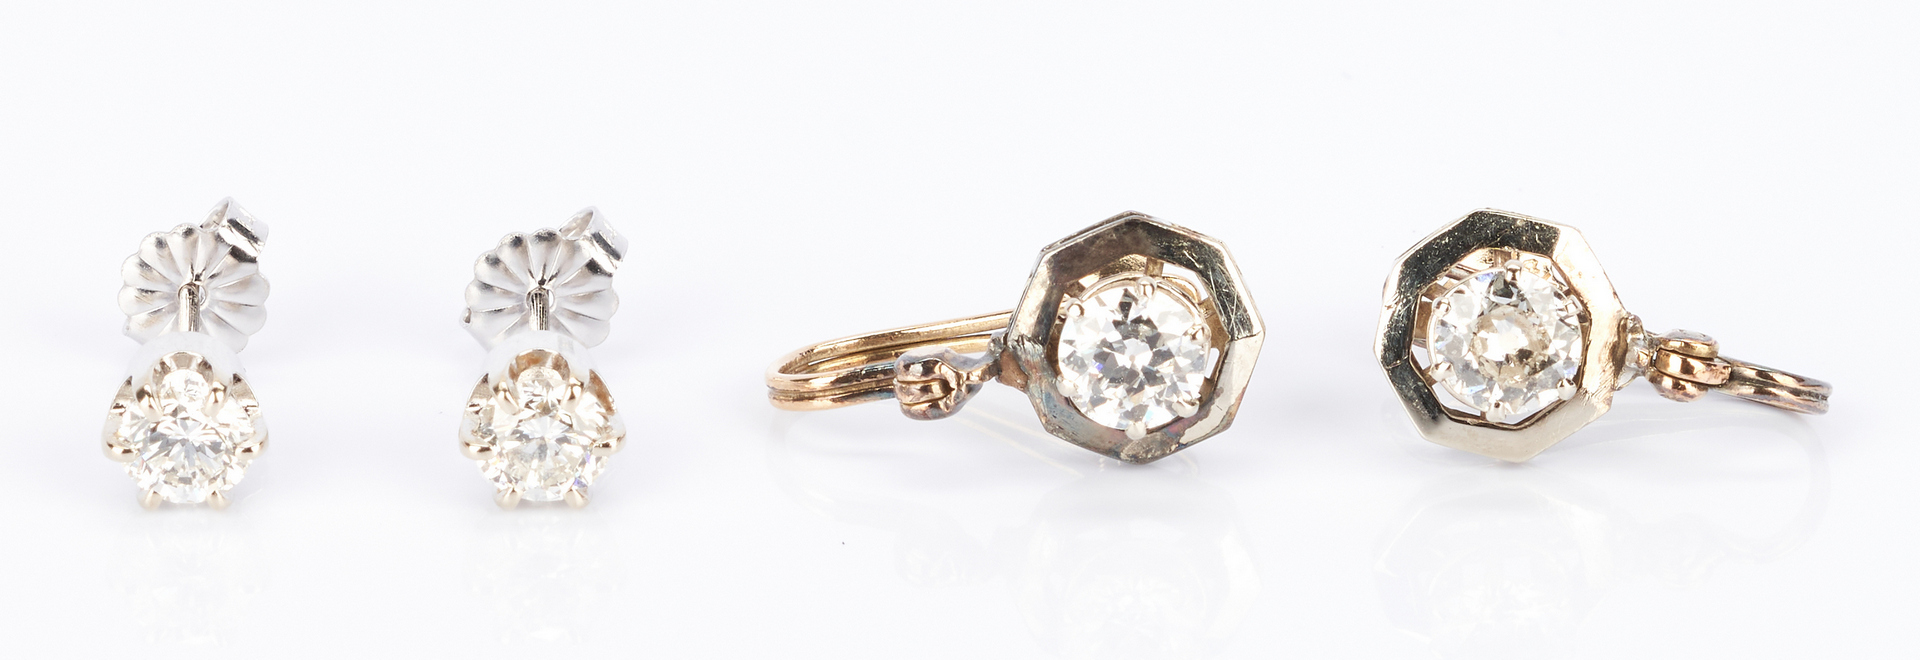 Lot 438: 2 Ladies Pairs of Diamond and Gemstone Earrings